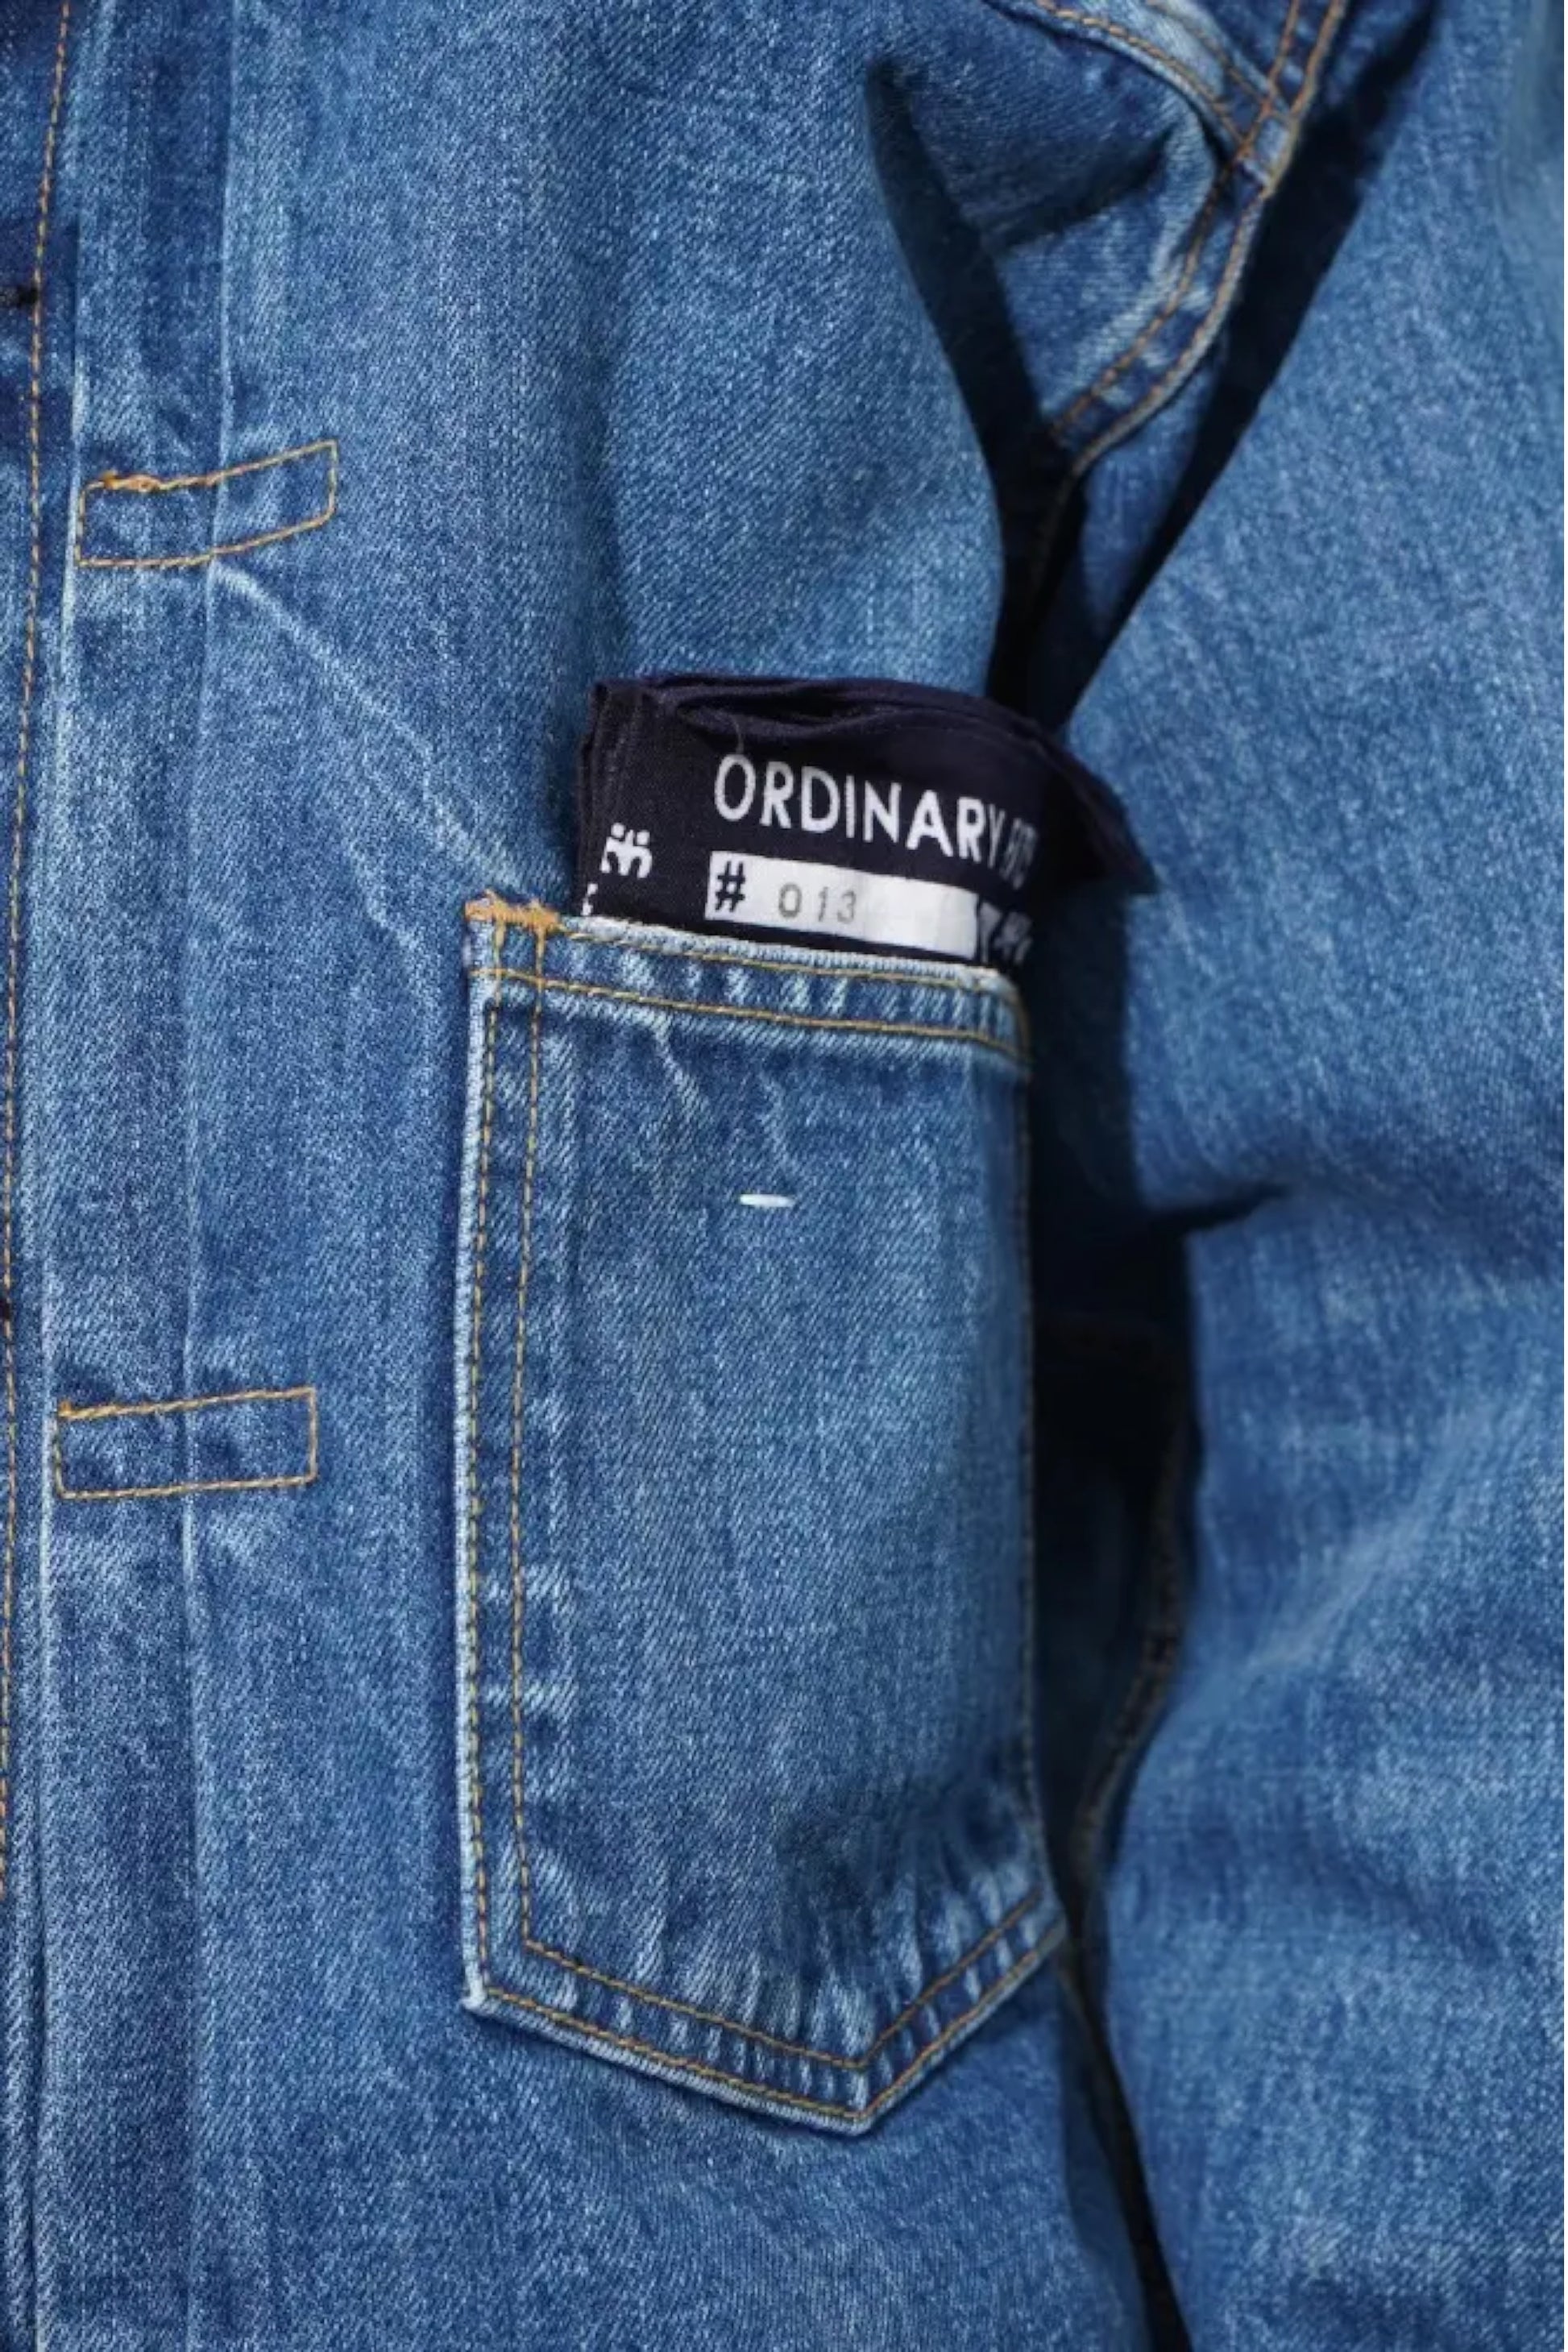 Ordinary Fits - Denim Jacket 1st (Used)